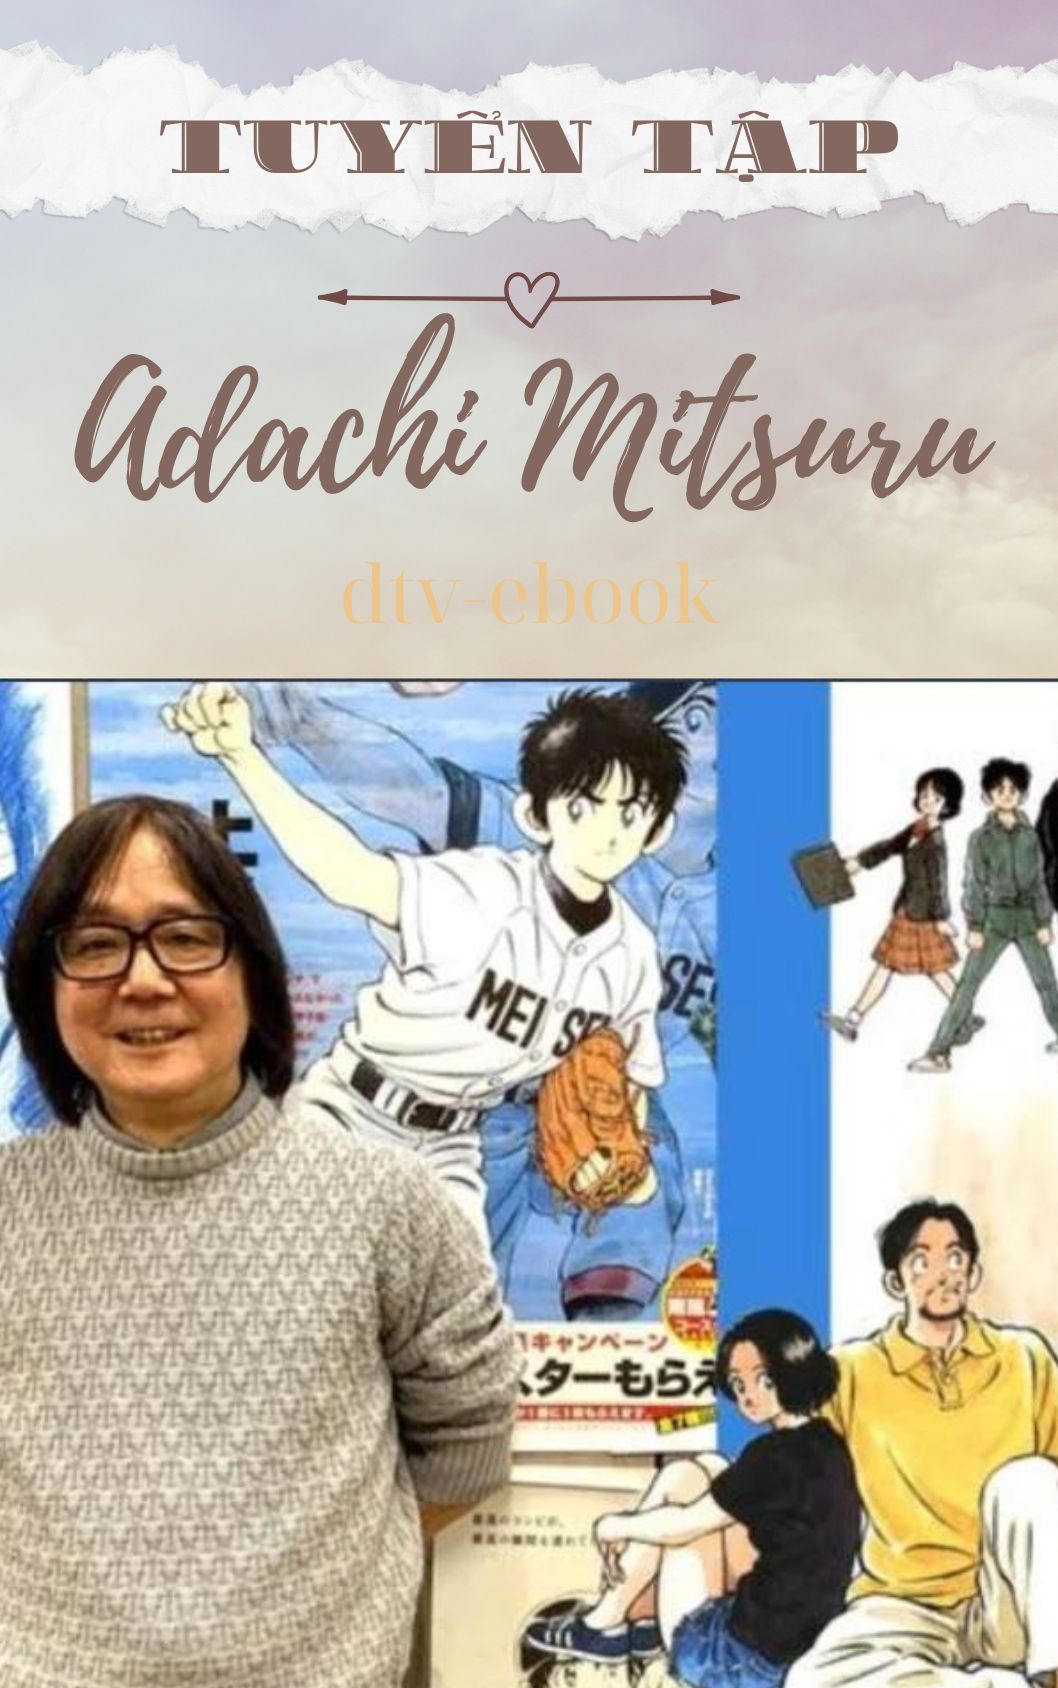 Tuyển Tập Adachi Mitsuru